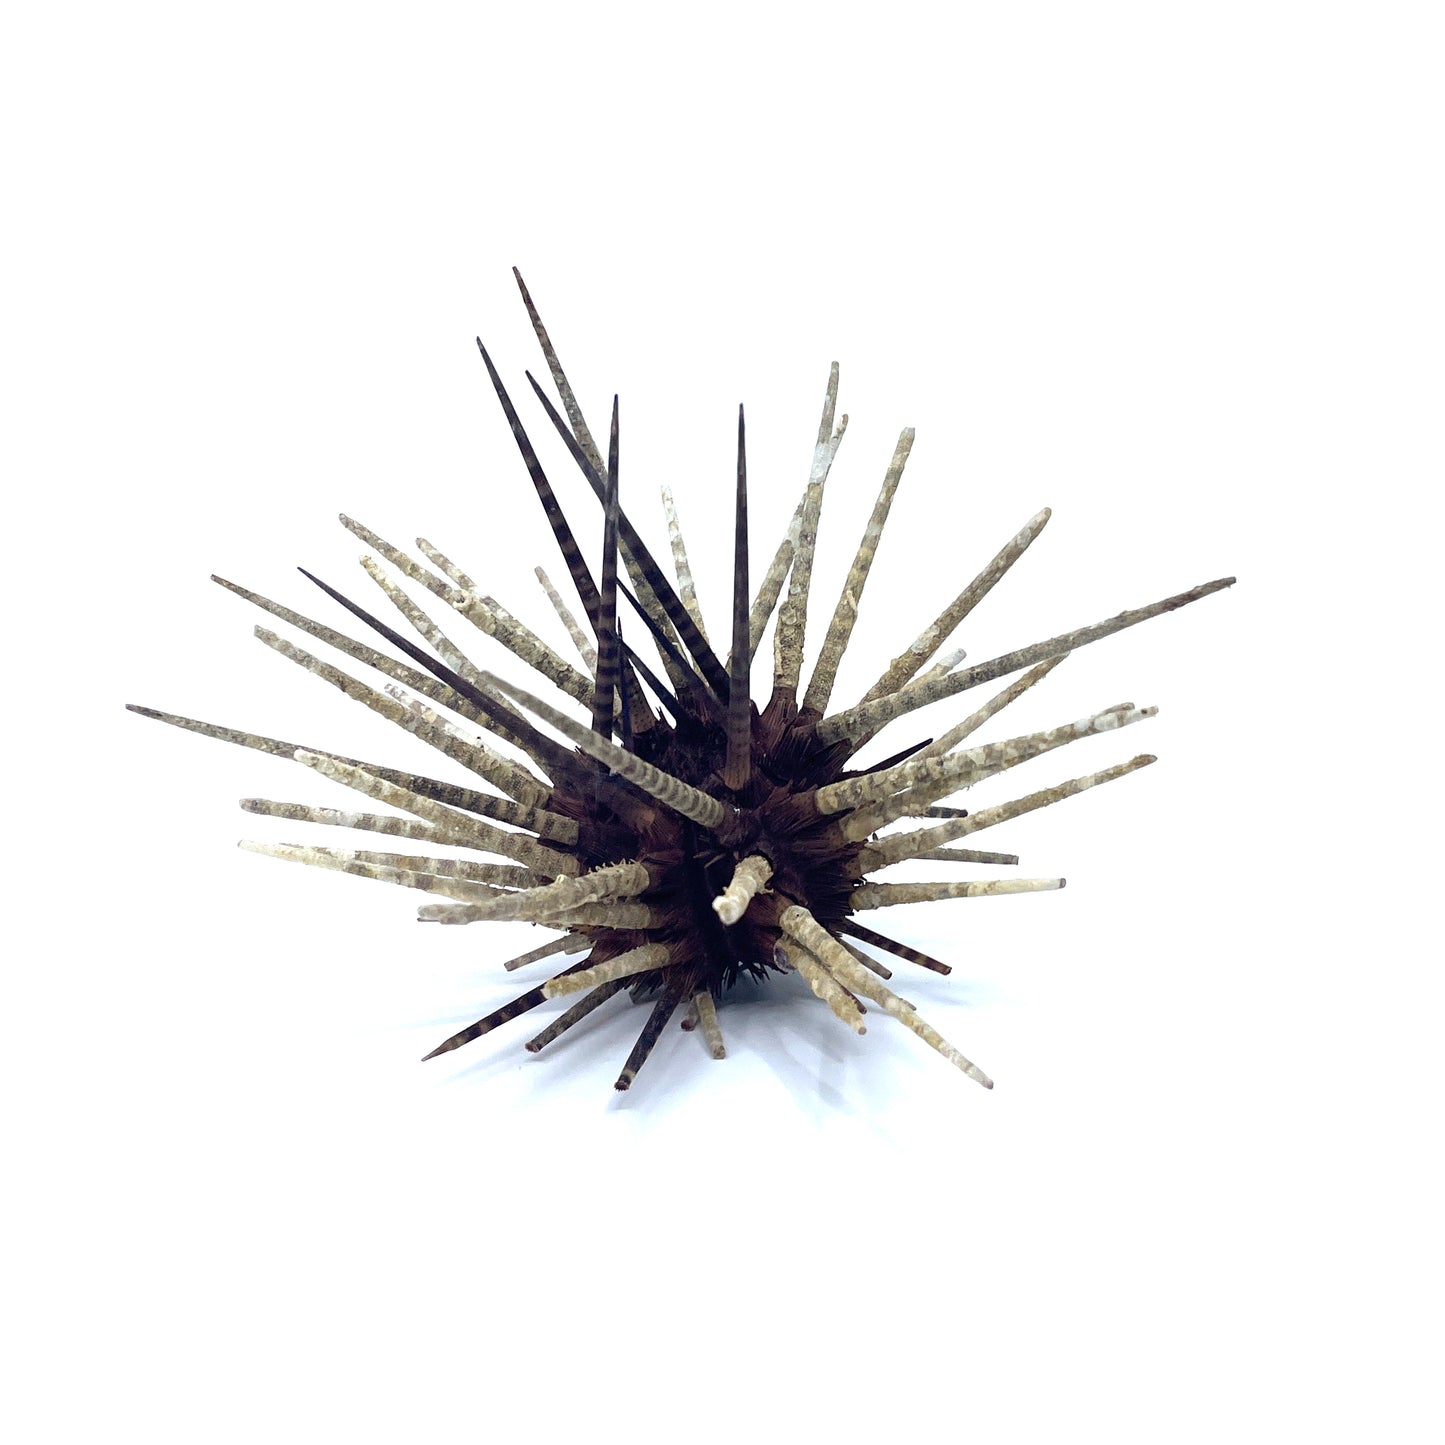 Zebra Urchin w/Spines